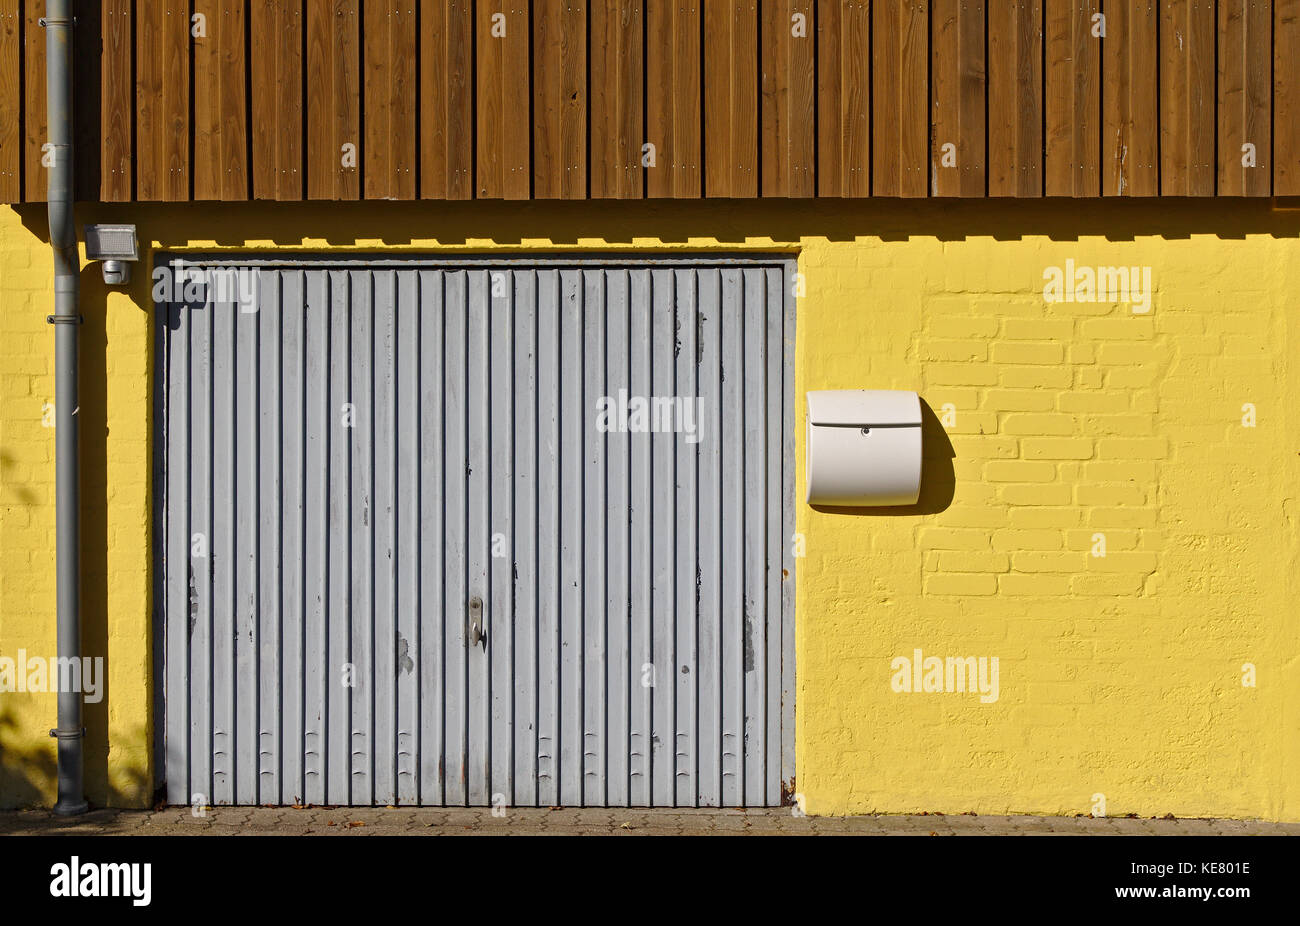 Pared de ladrillo de color amarillo con la puerta del garaje, casilla de correo, tubo de bajante marrón y paneles de madera en el segundo piso Foto de stock